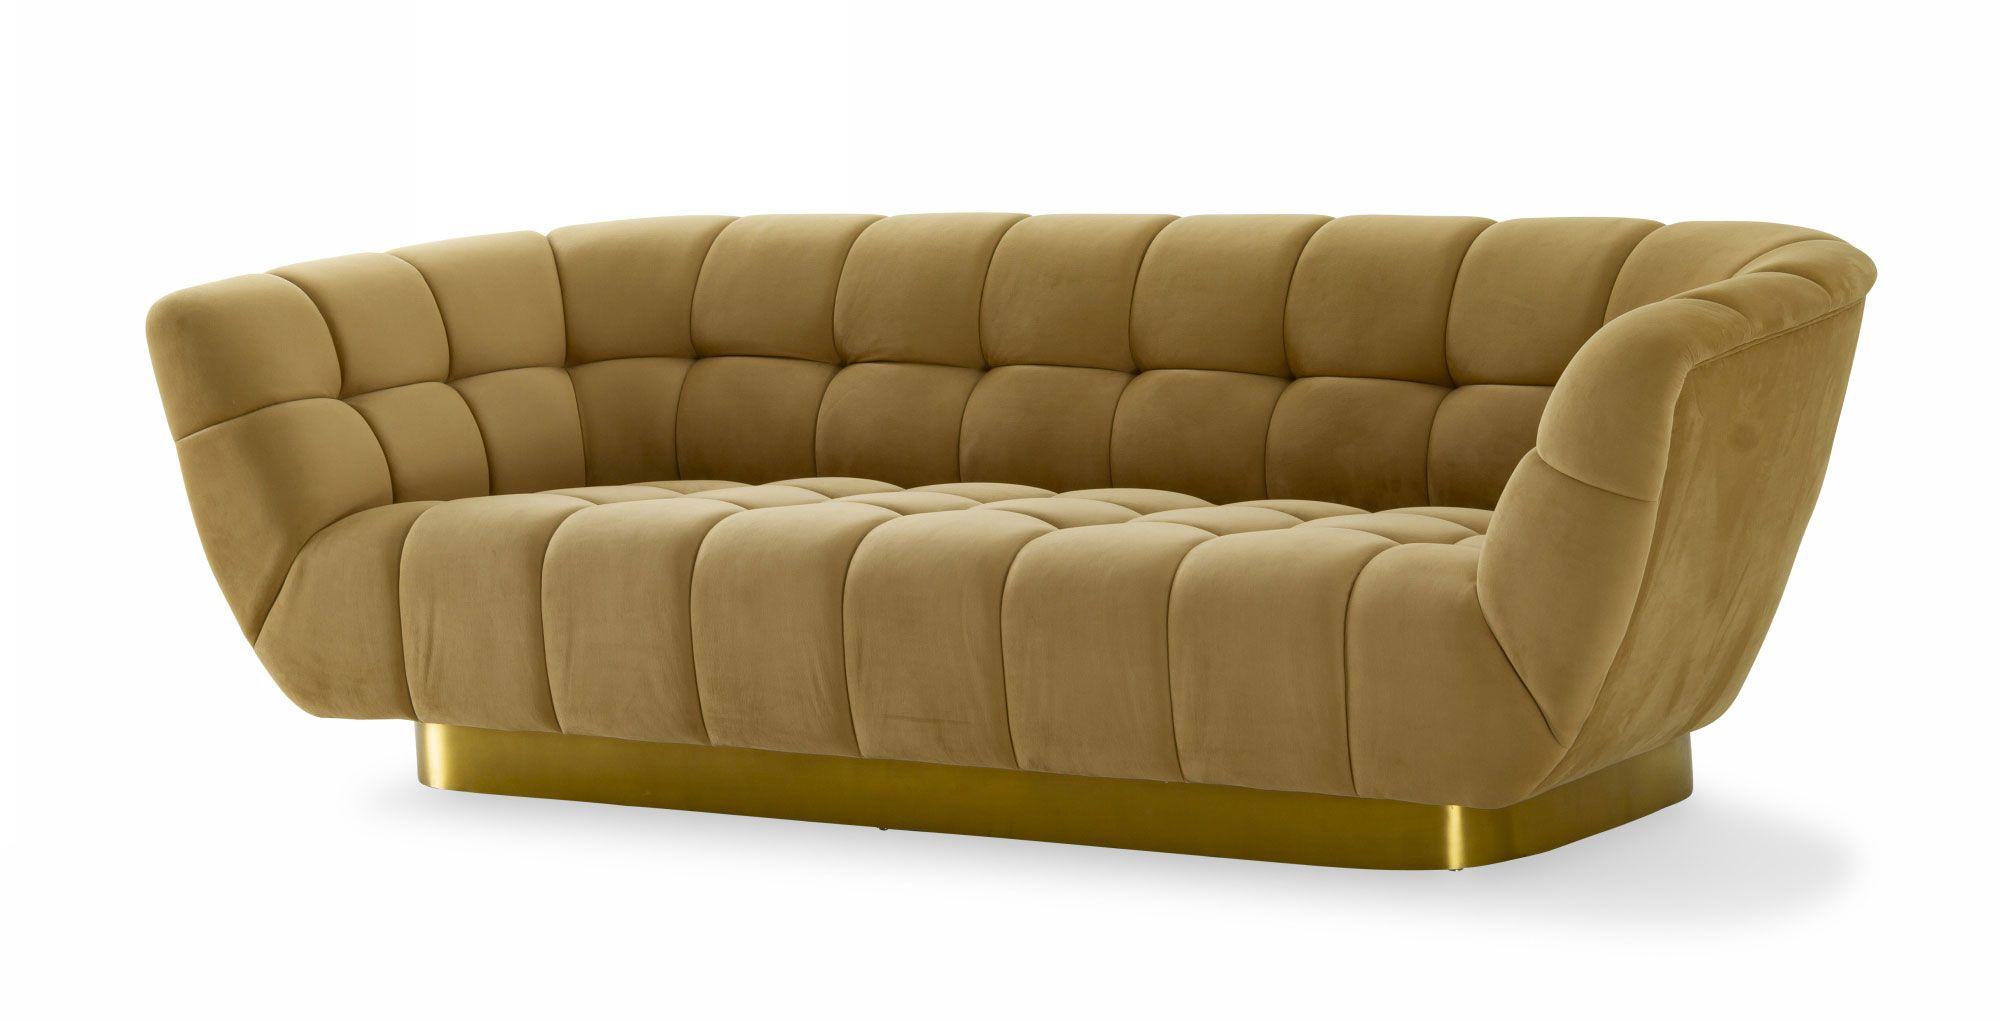 Modern Sofa VGODZW-946 VGODZW-946 in Yellow Fabric